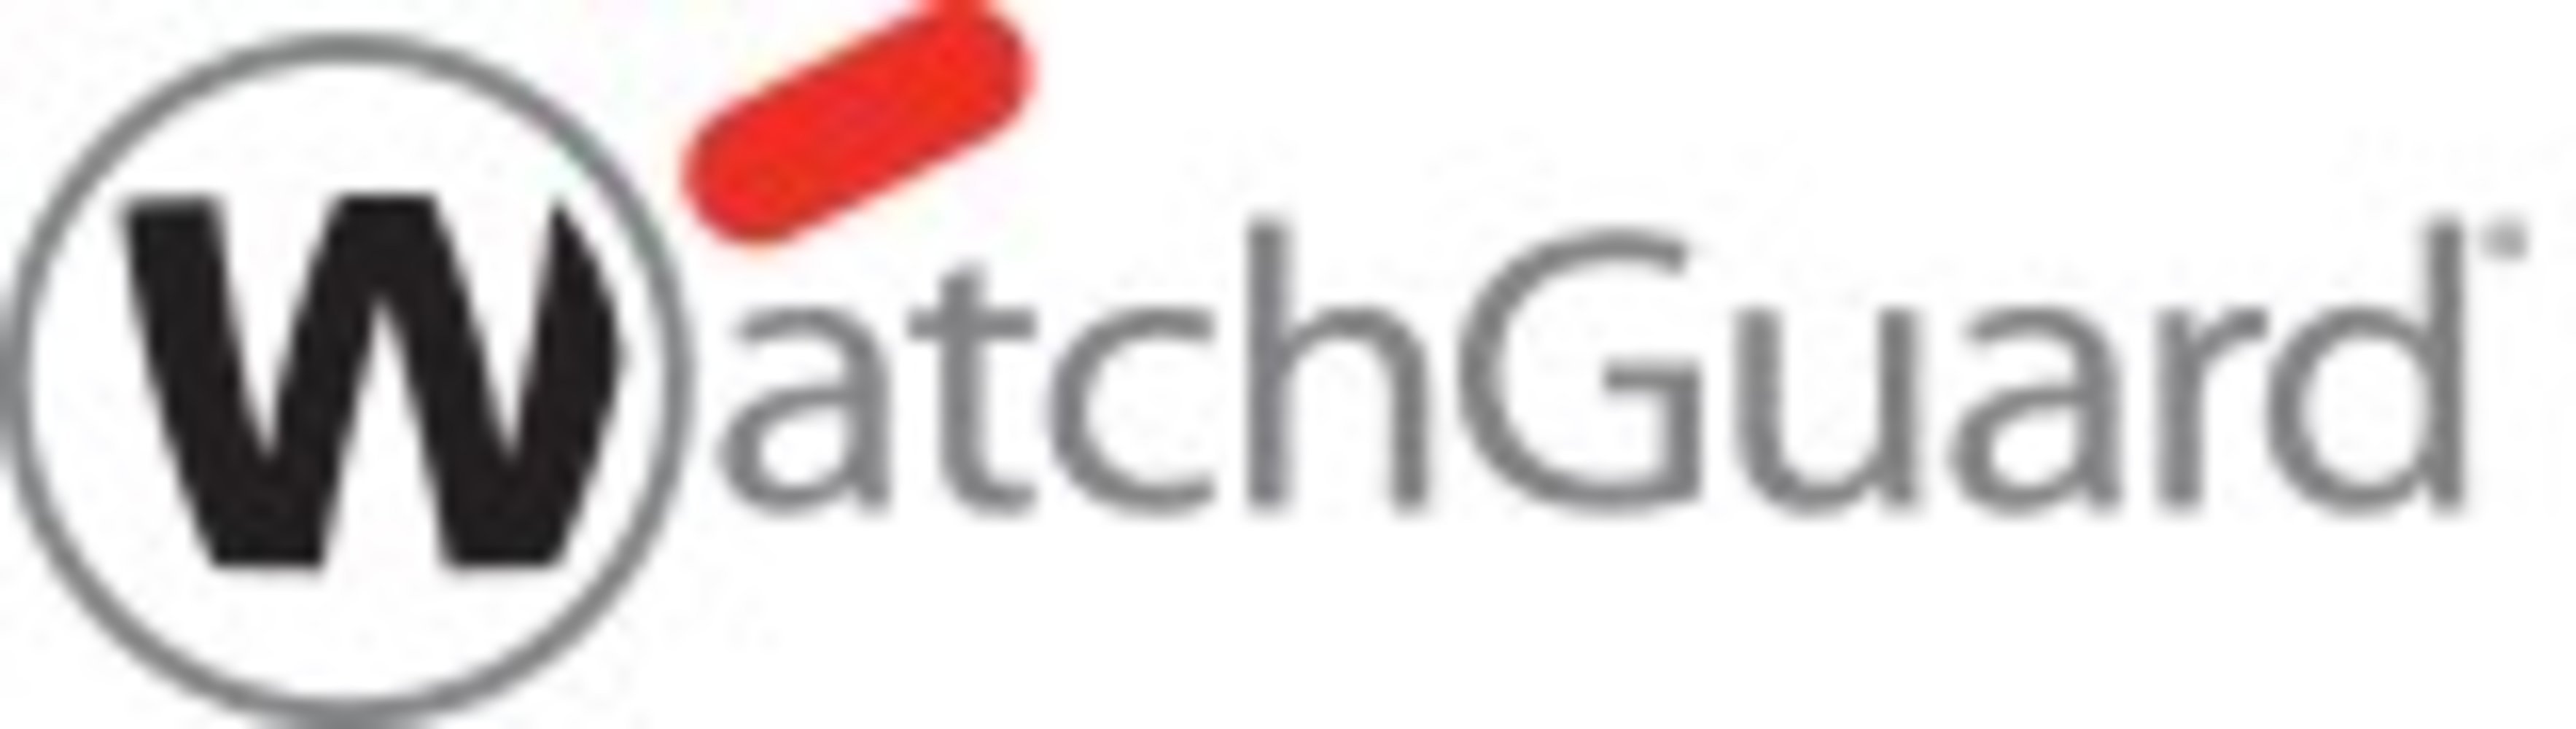 WatchGuard Firebox zbh - Datenspeicherung in der WatchGuard Cloud für 1 Monat für M400 - 3 Jahre